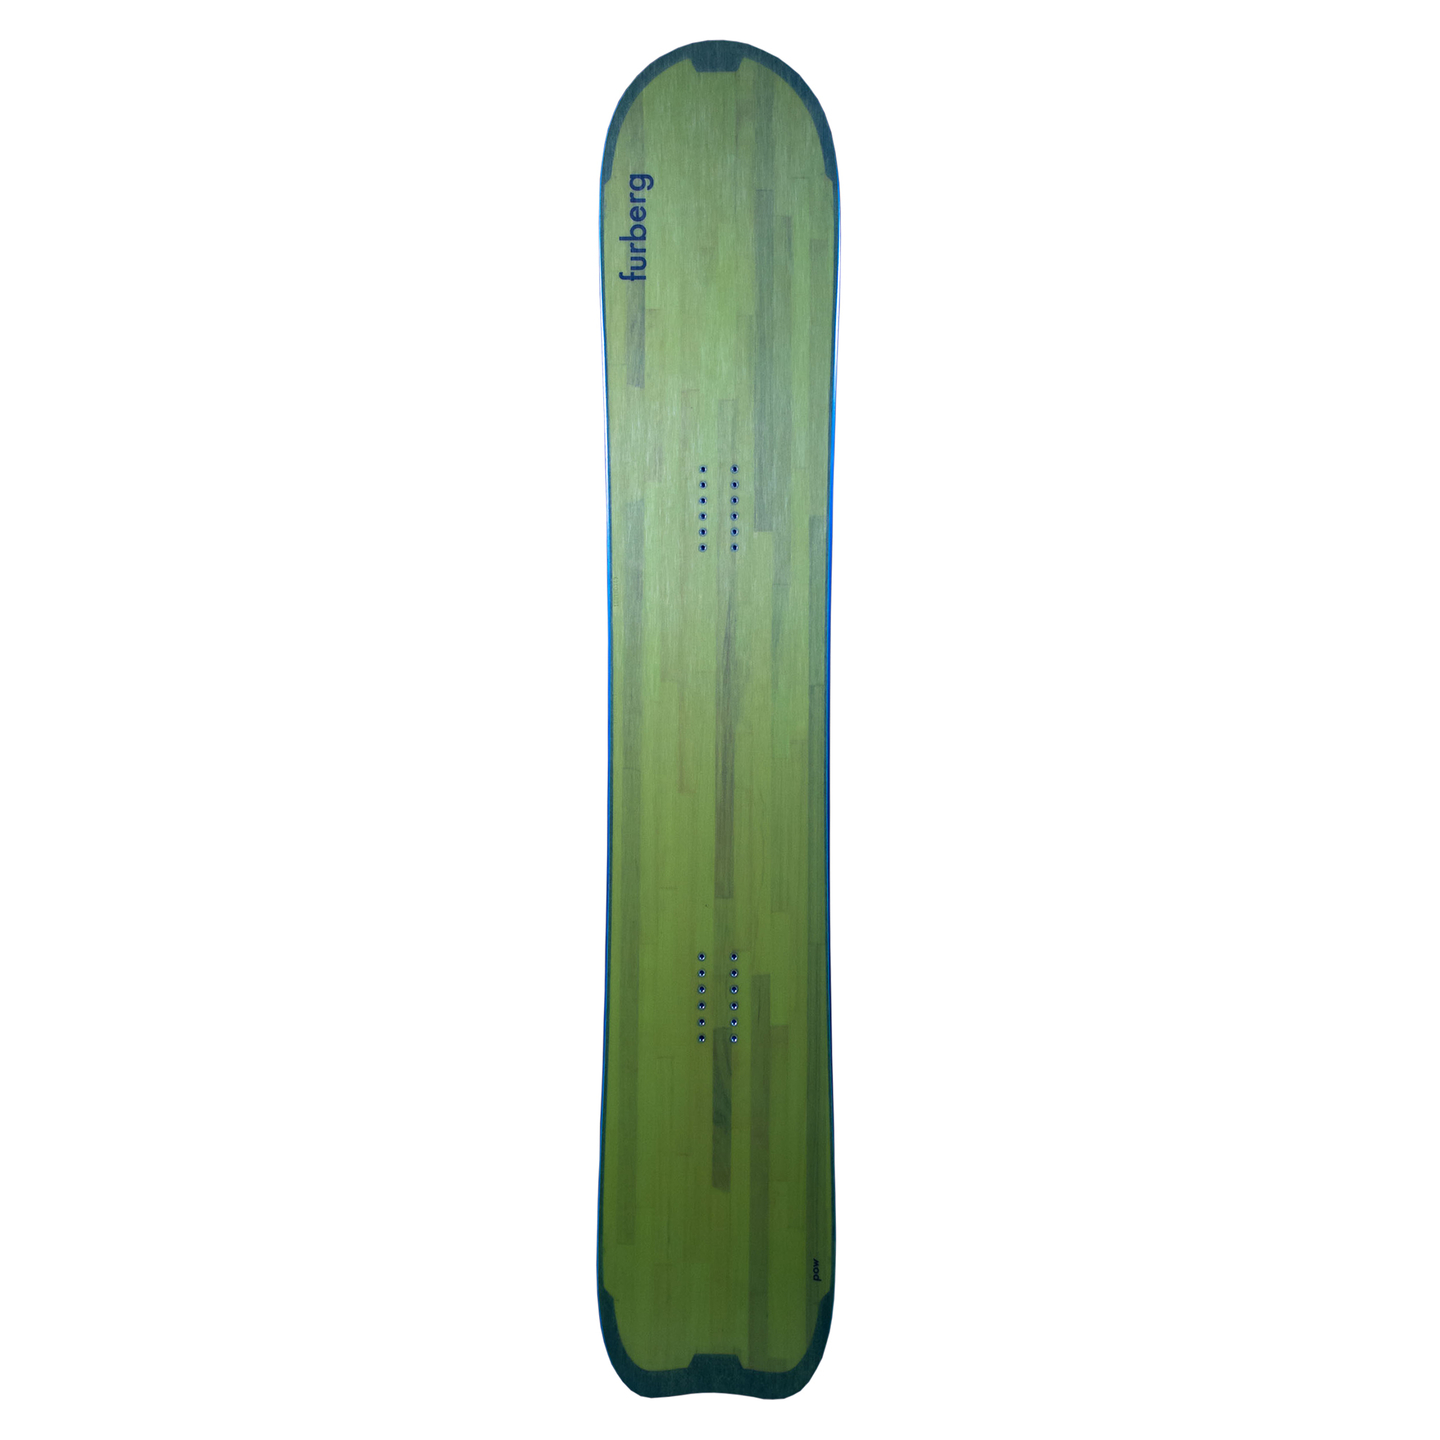 Green snowboard